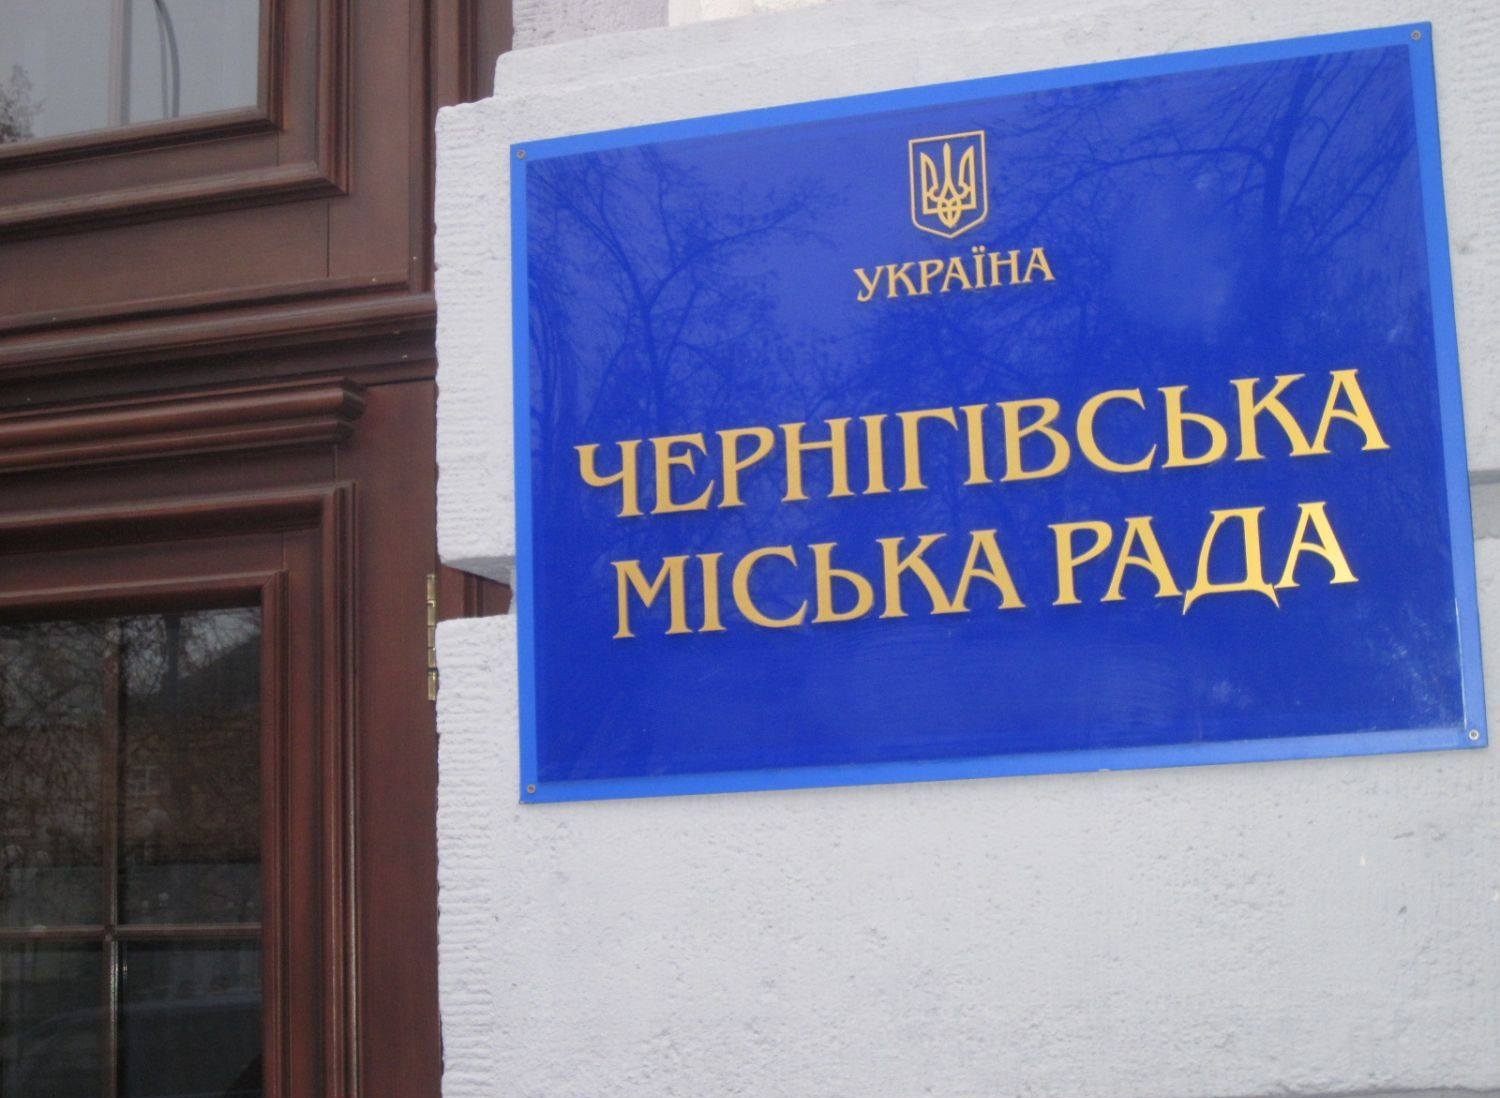 Начальник КП "Новозаводское" уволен по соглашению сторон – документ